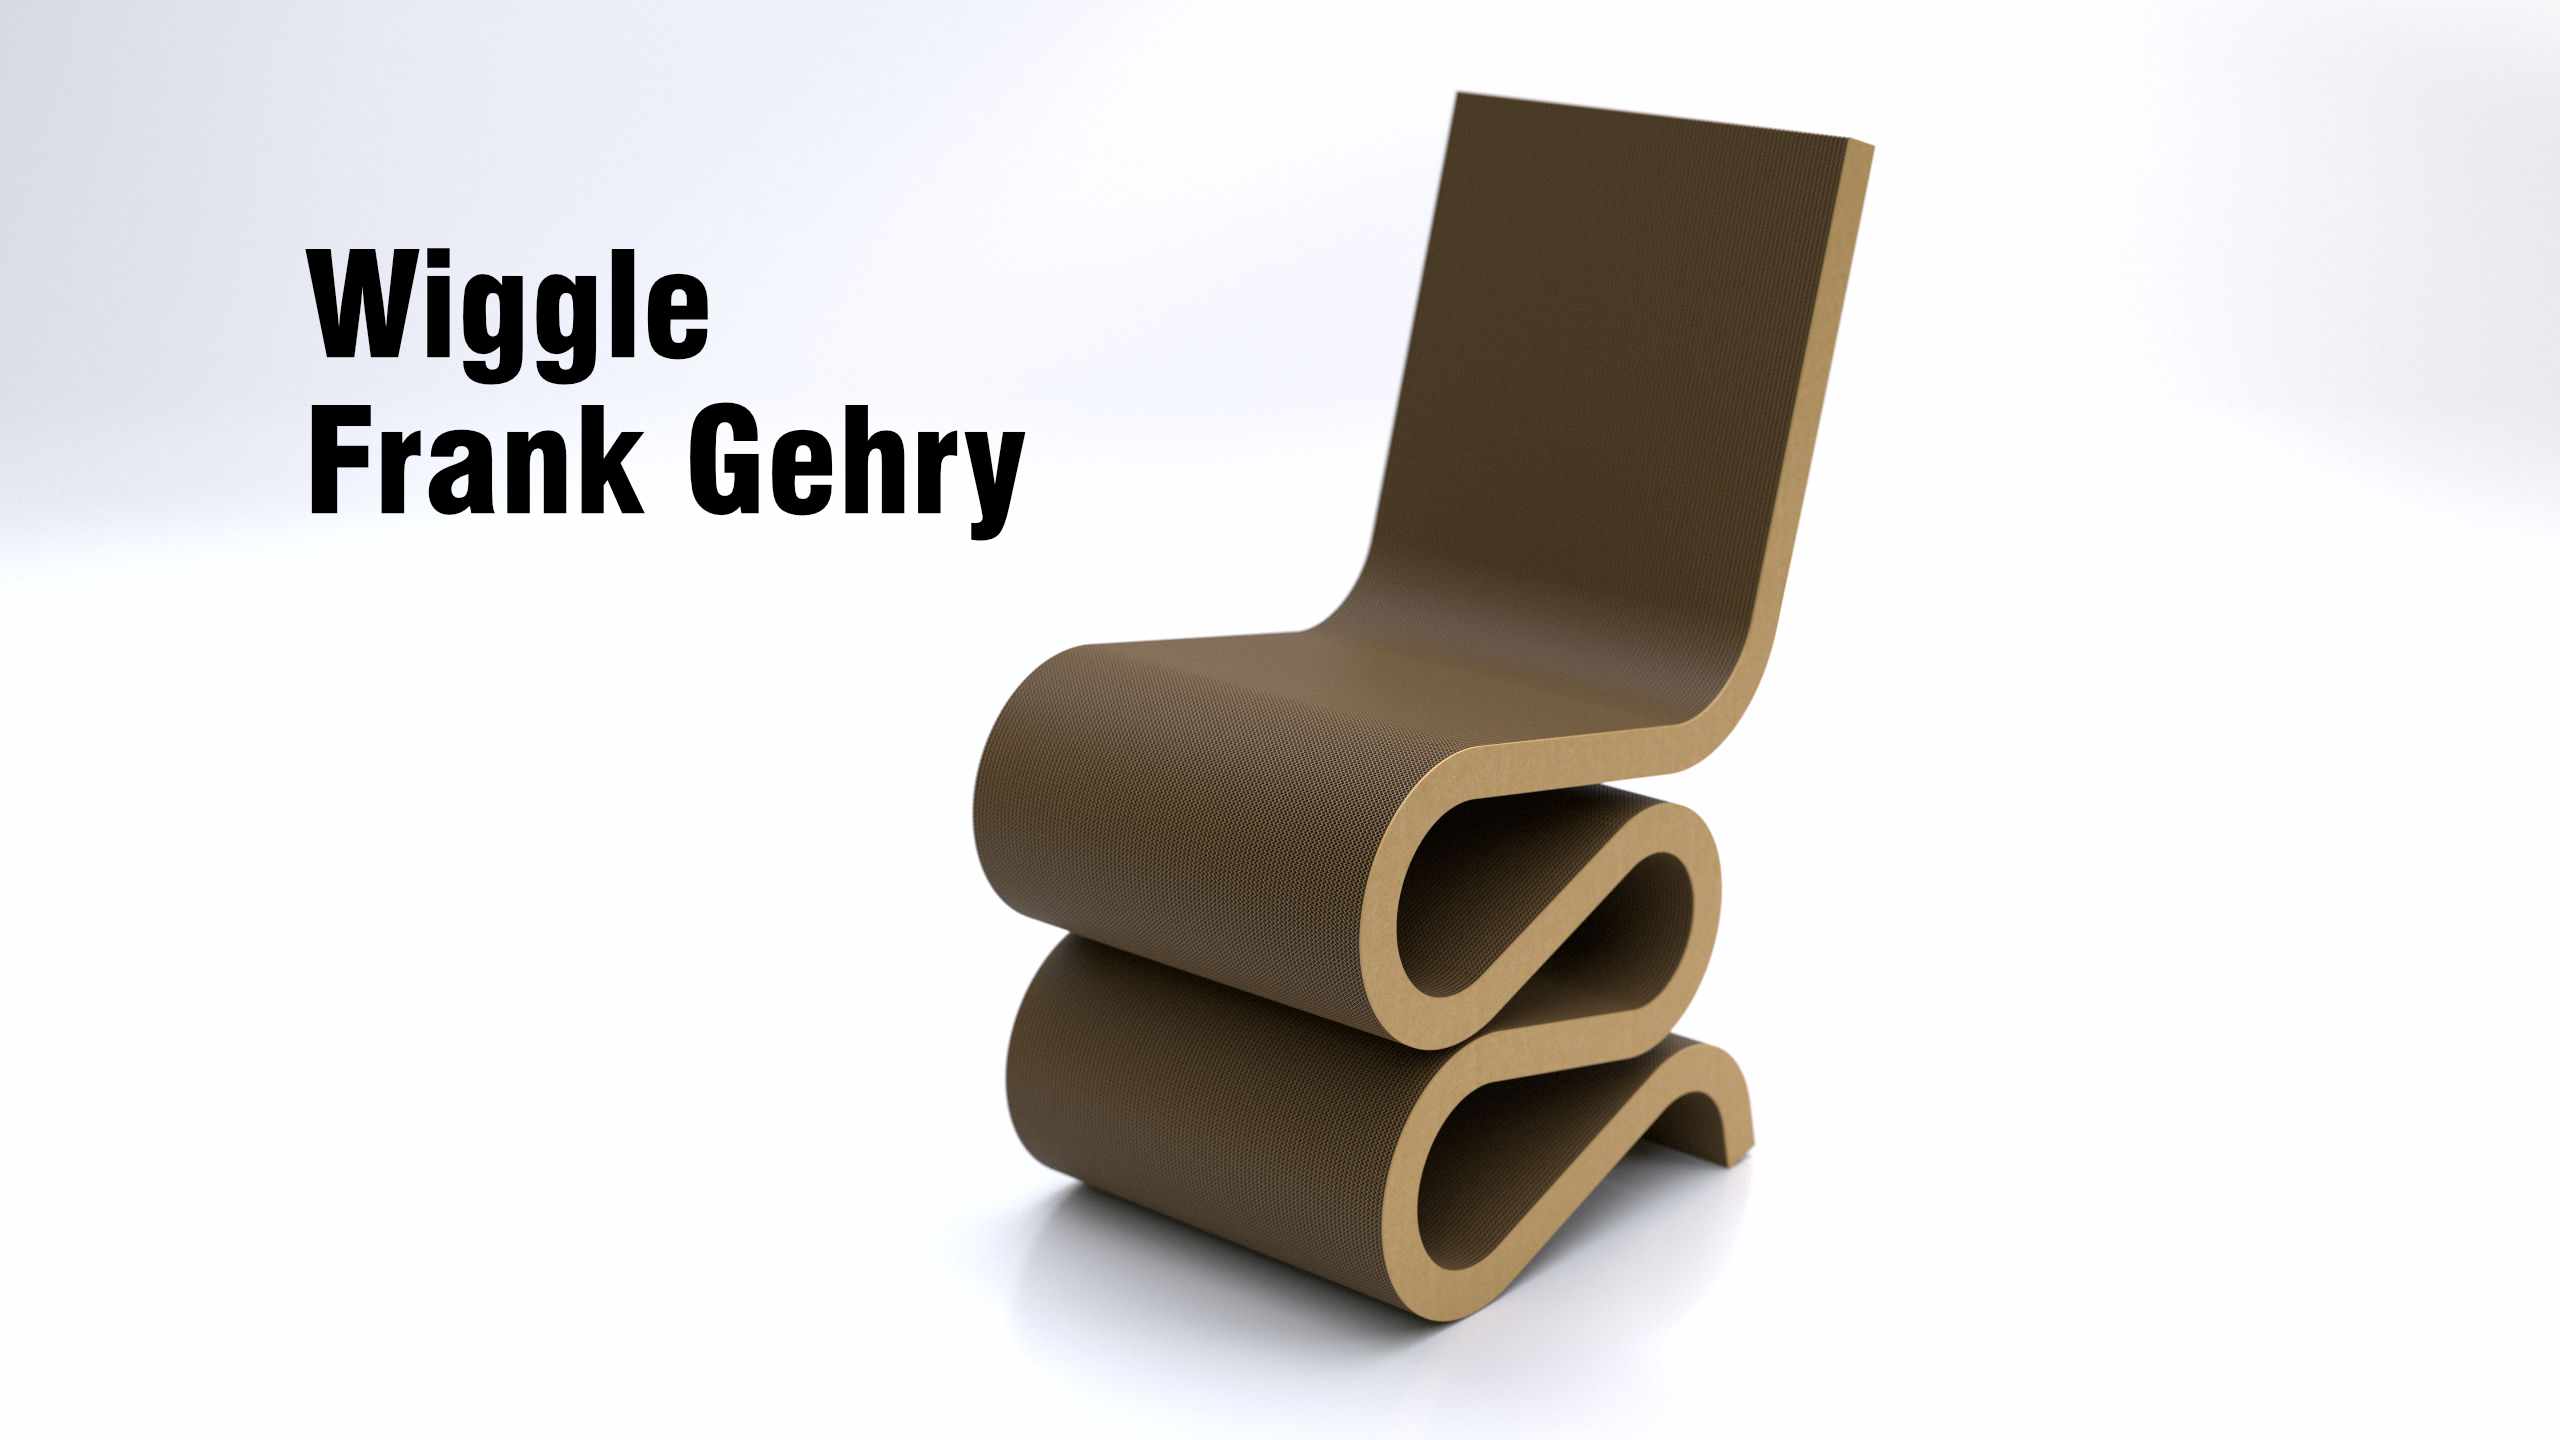 3d virtual rendering of Gehry's cardboard chair